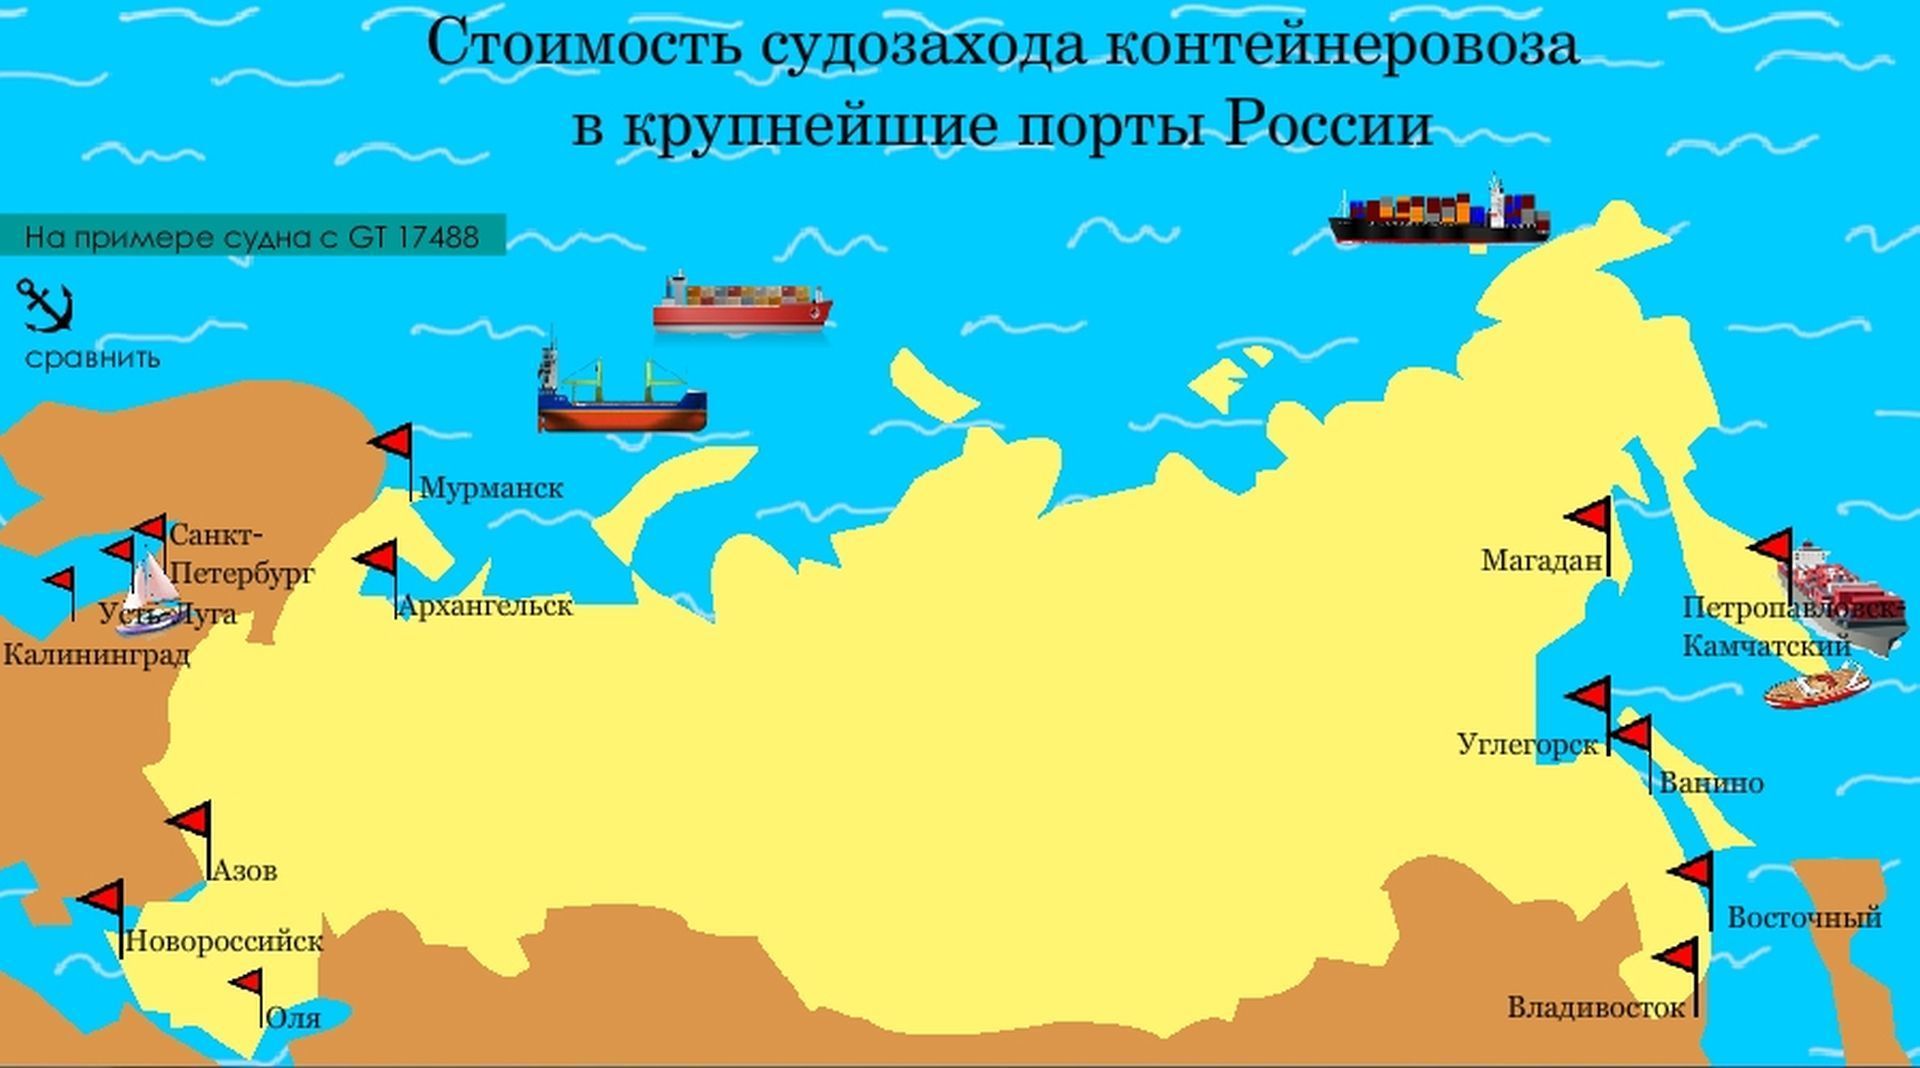 Крупнейшие города порты россии. Крупнейшие Порты России.